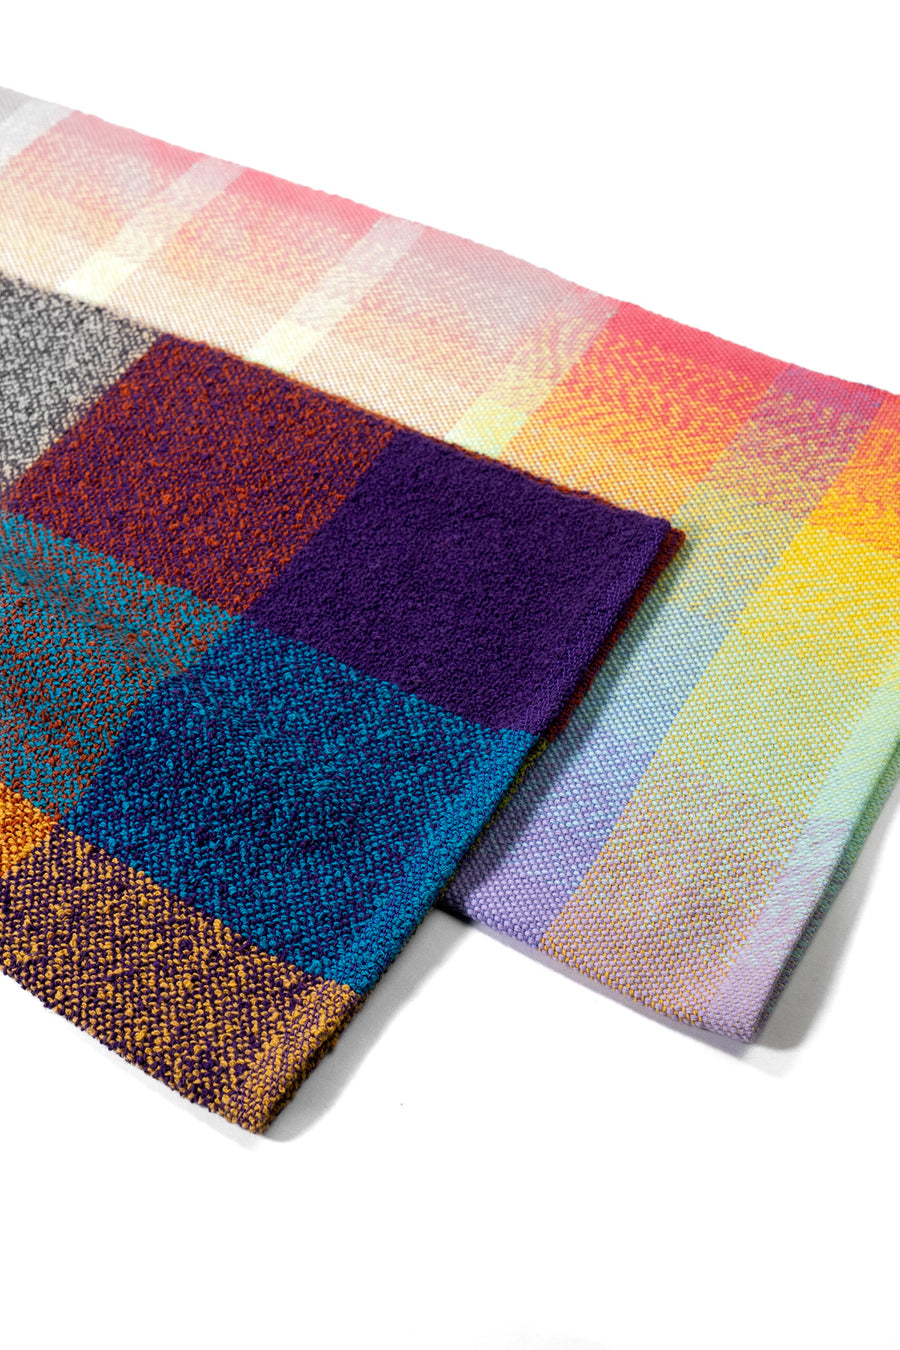 Oregon Boucle Plaid Handwoven Towel by Fiber Art Designs